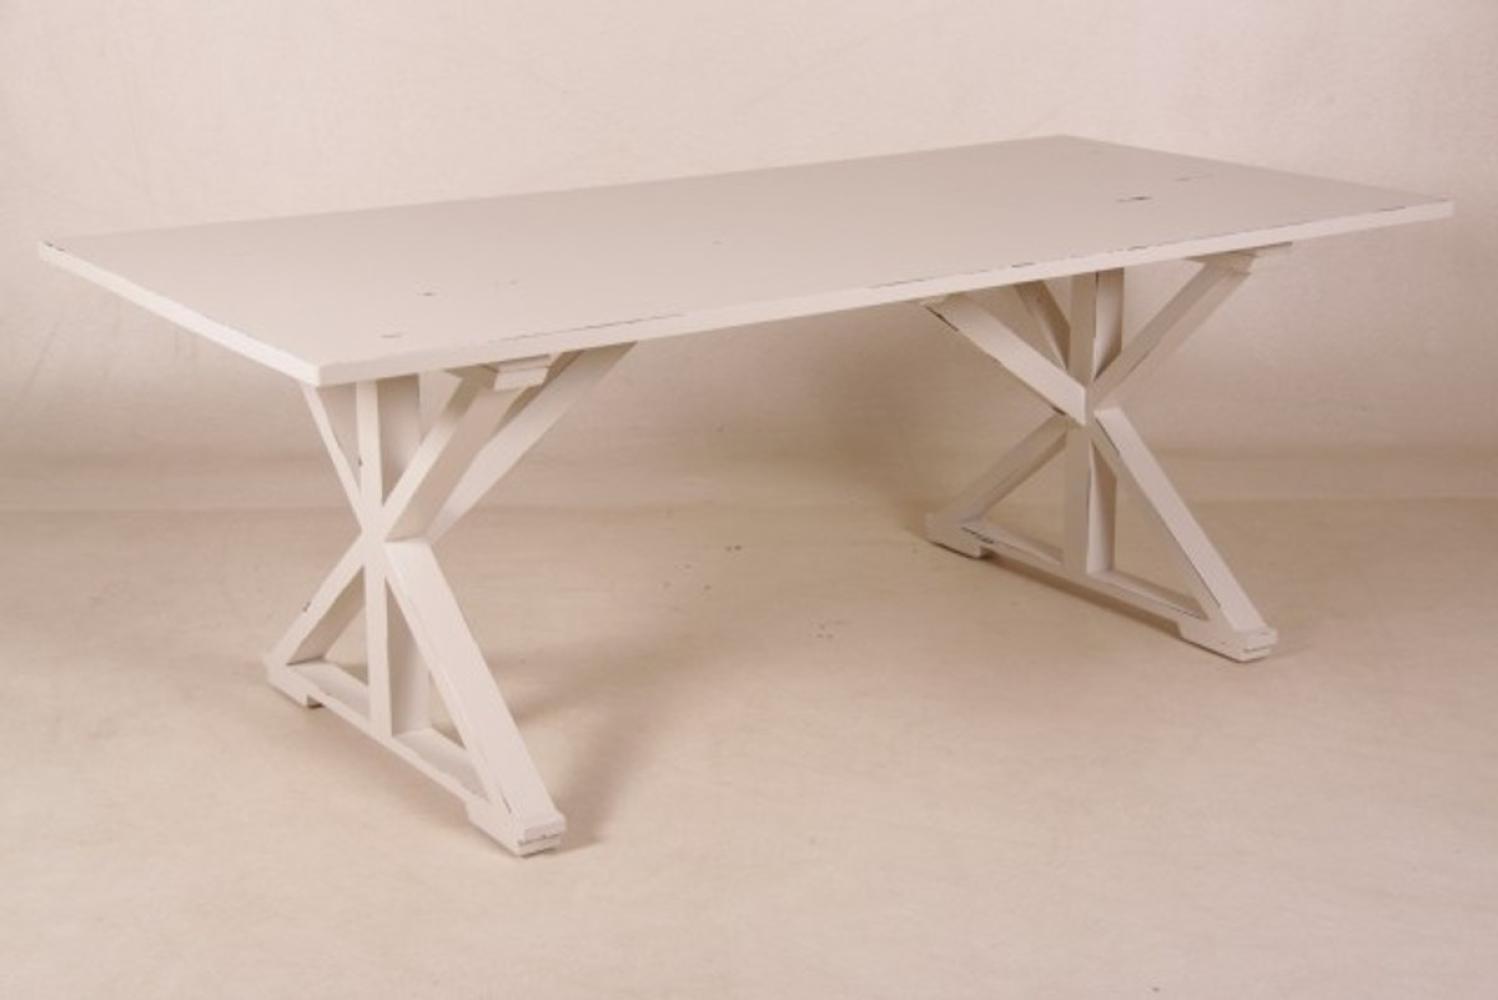 Casa Padrino Vintage Teak Esstisch Antik Stil Weiß 170 x 95 cm - Landhaus Stil Tisch Teakholz Bild 1